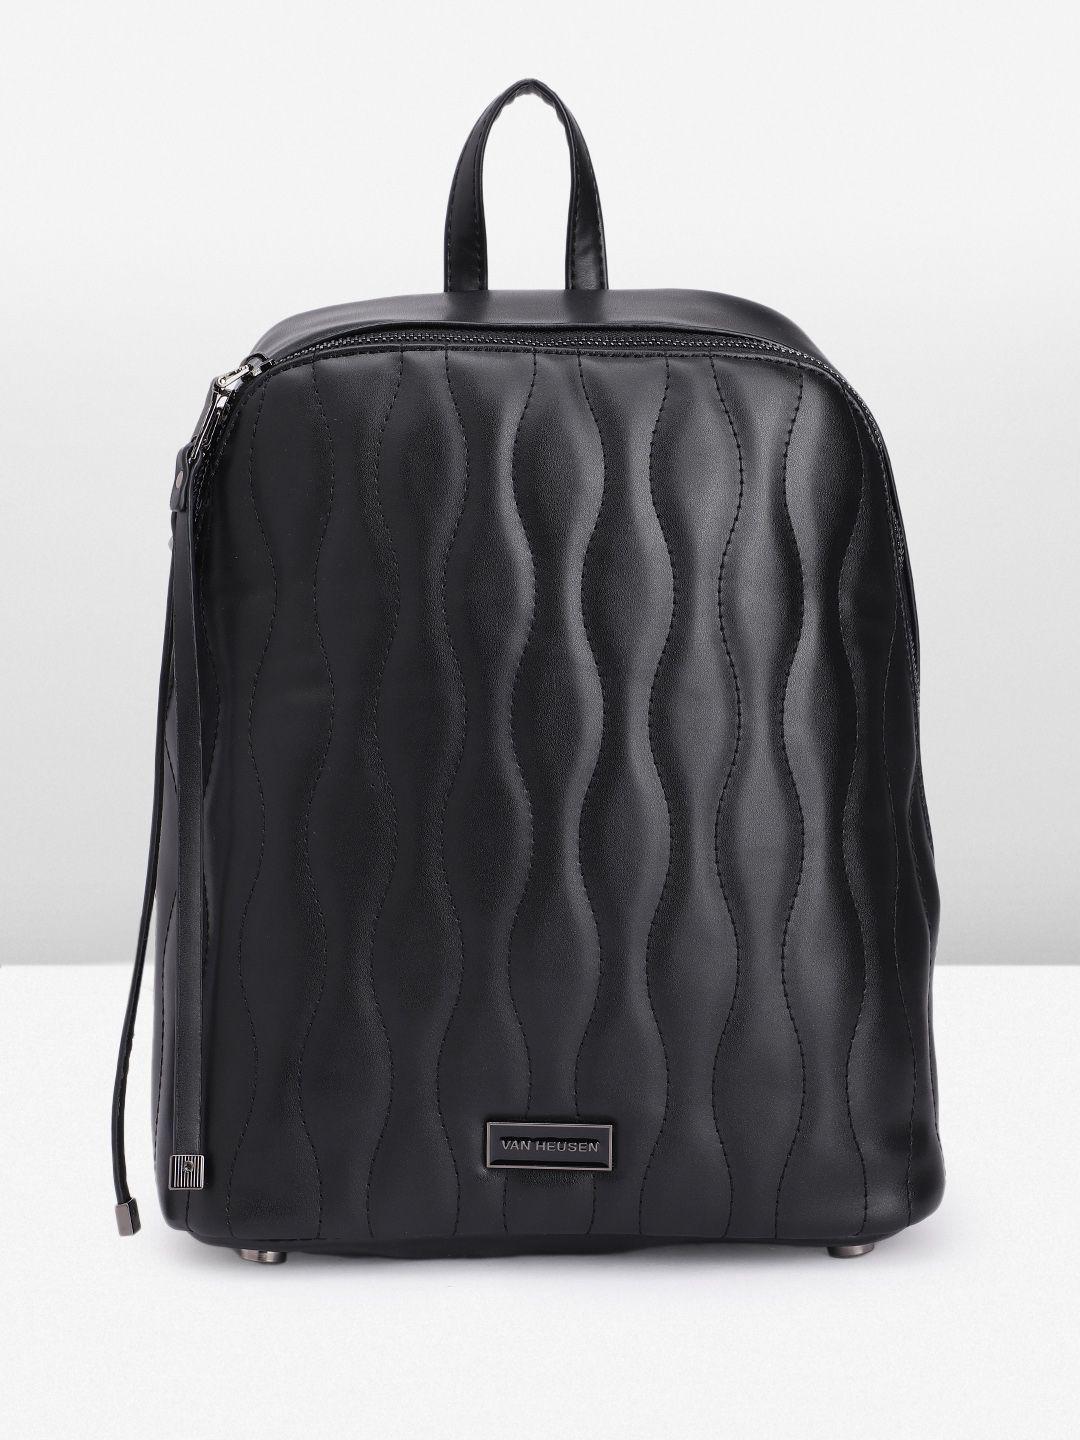 van-heusen-women-textured-backpack